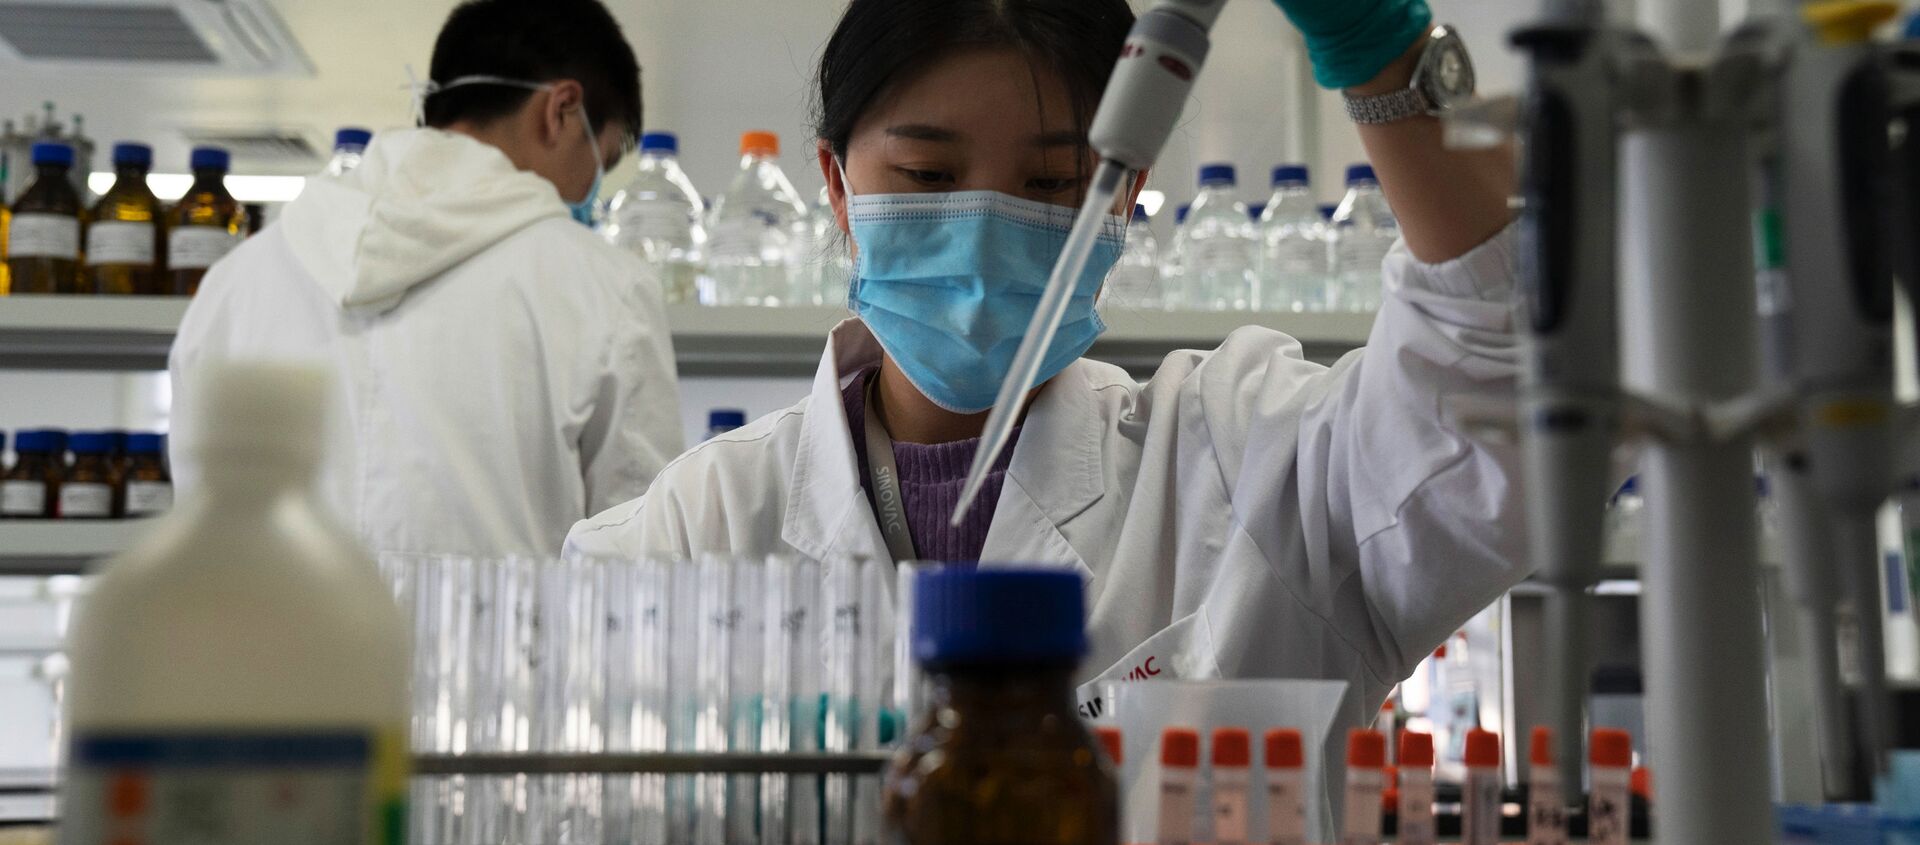 Nhân viên của SinoVac trong phòng thí nghiệm tại nhà máy vắc xin CoronaVac ở Bắc Kinh. - Sputnik Việt Nam, 1920, 26.11.2020